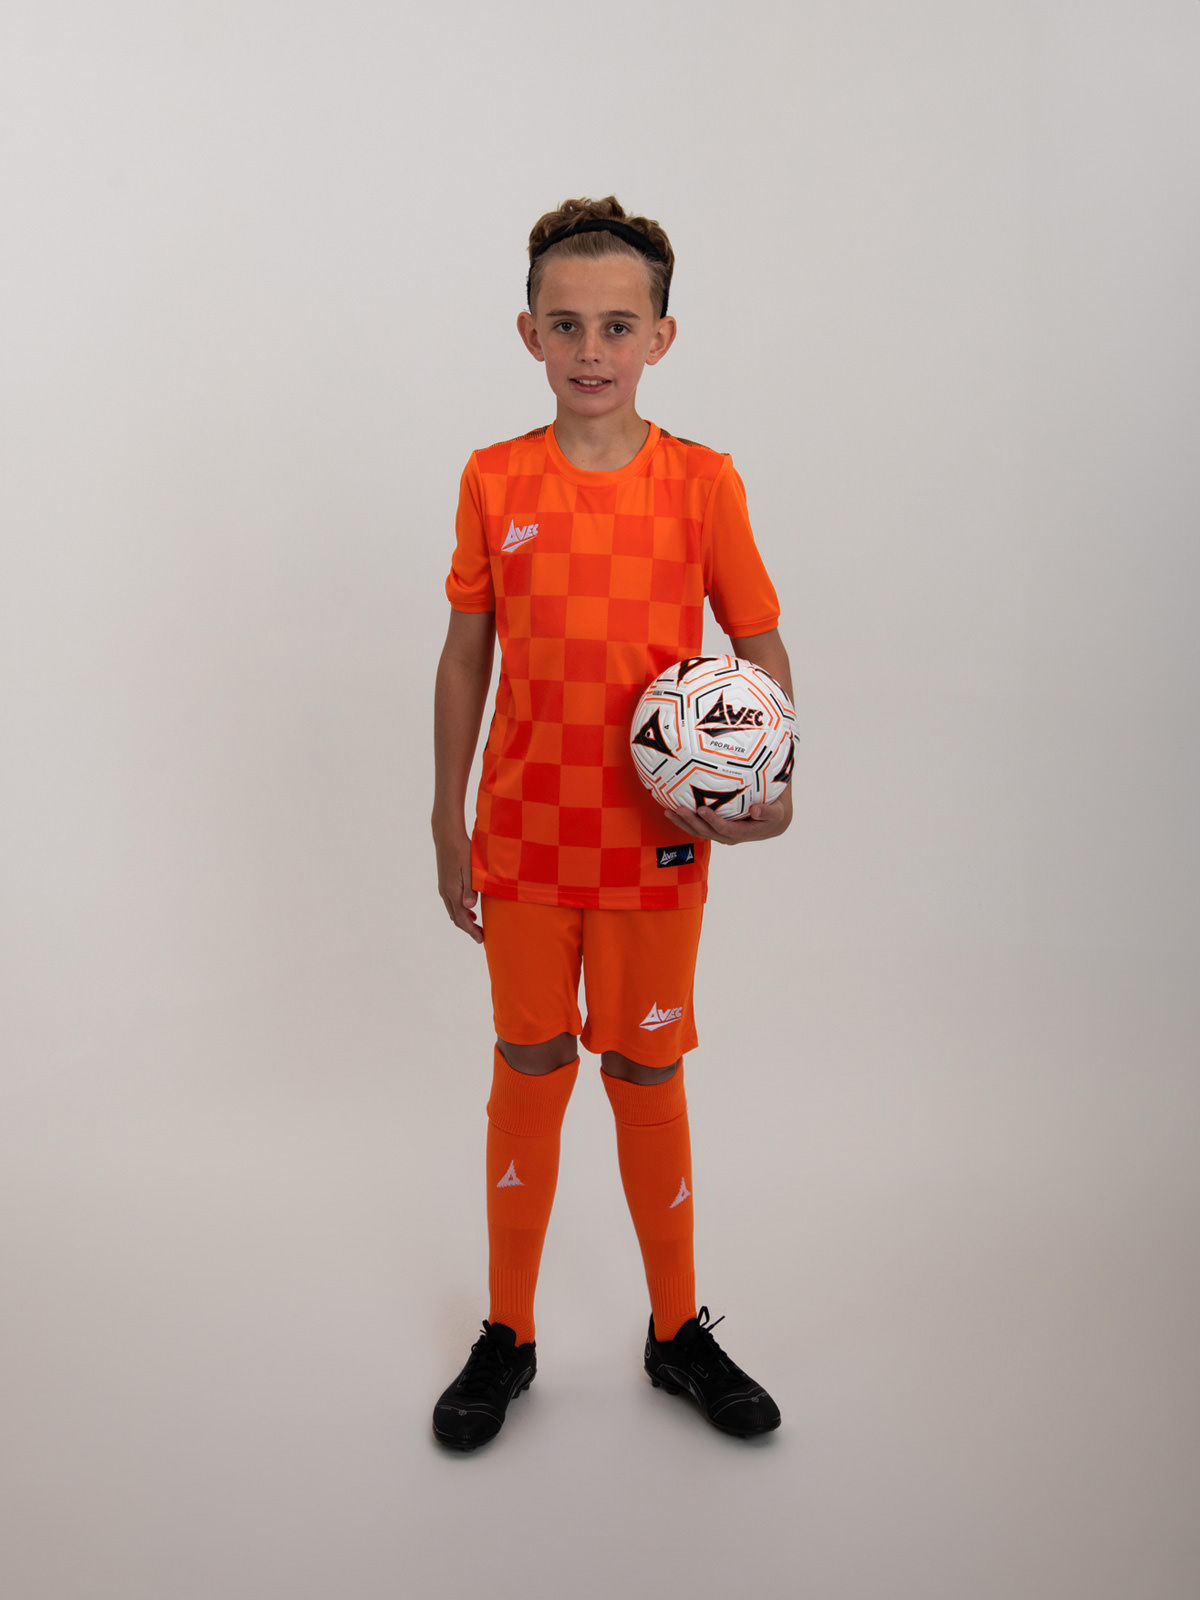 an orange football kit is worn with children's orange shorts